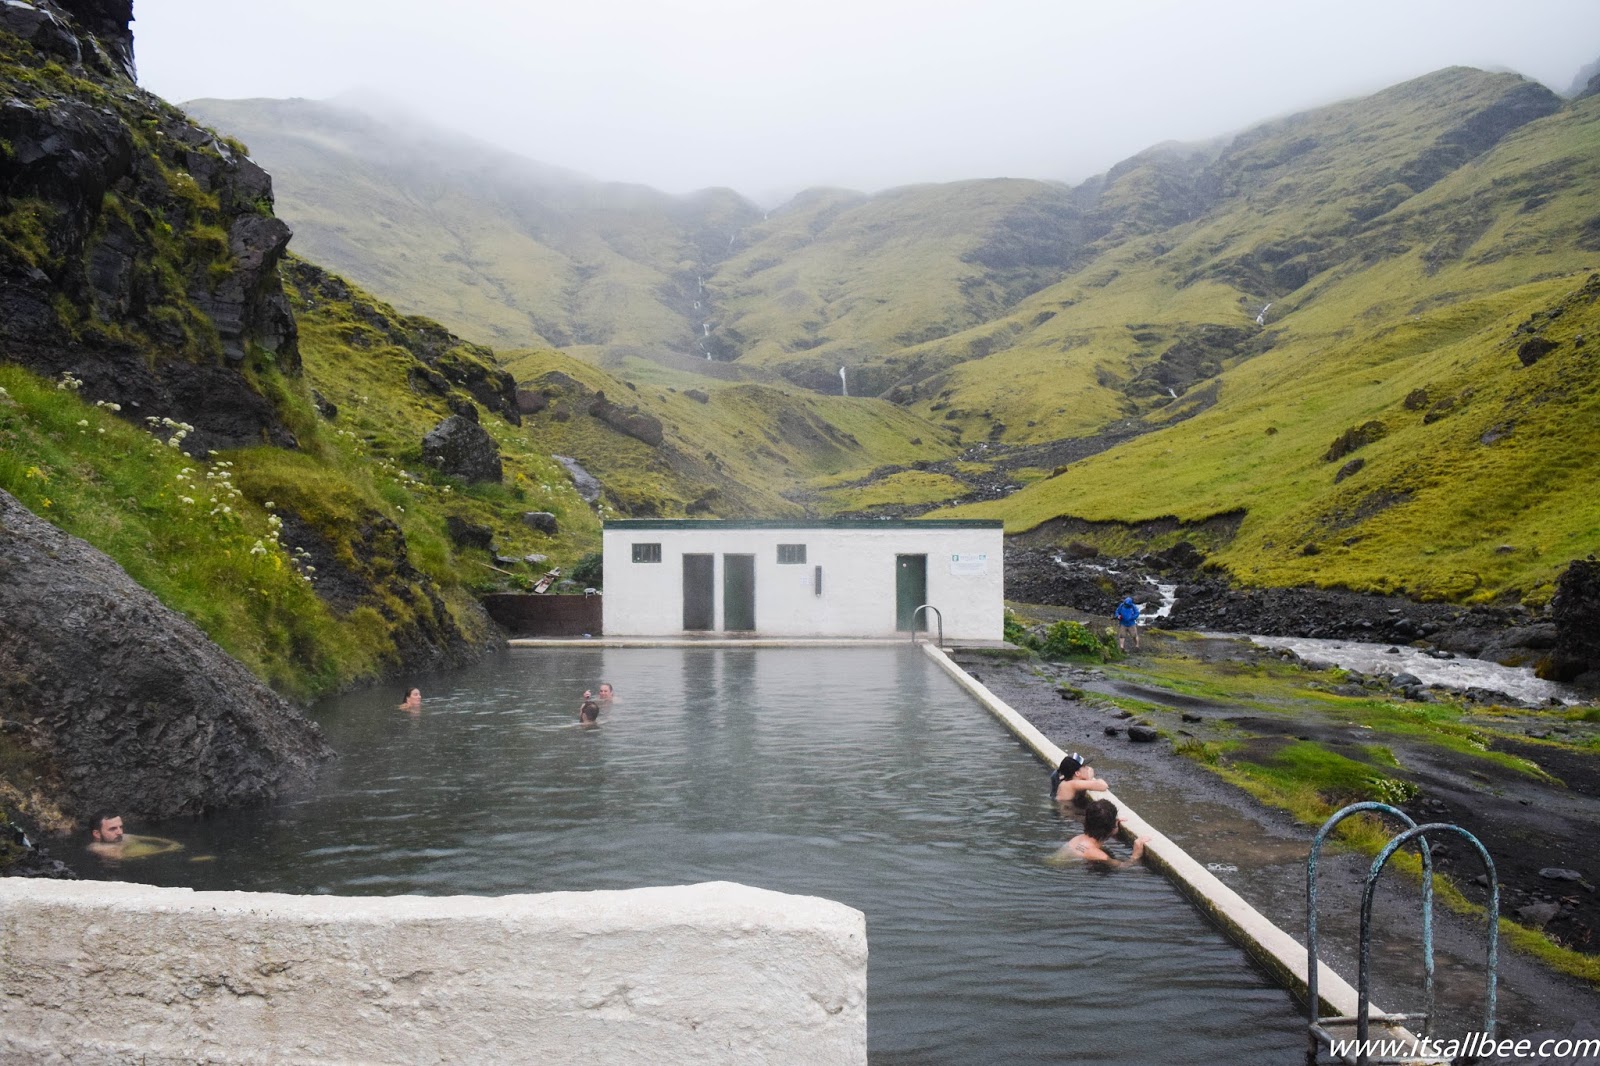 Seljavallalaug  Pool - How to find the Iceland hidden pool (seljavellir pool)